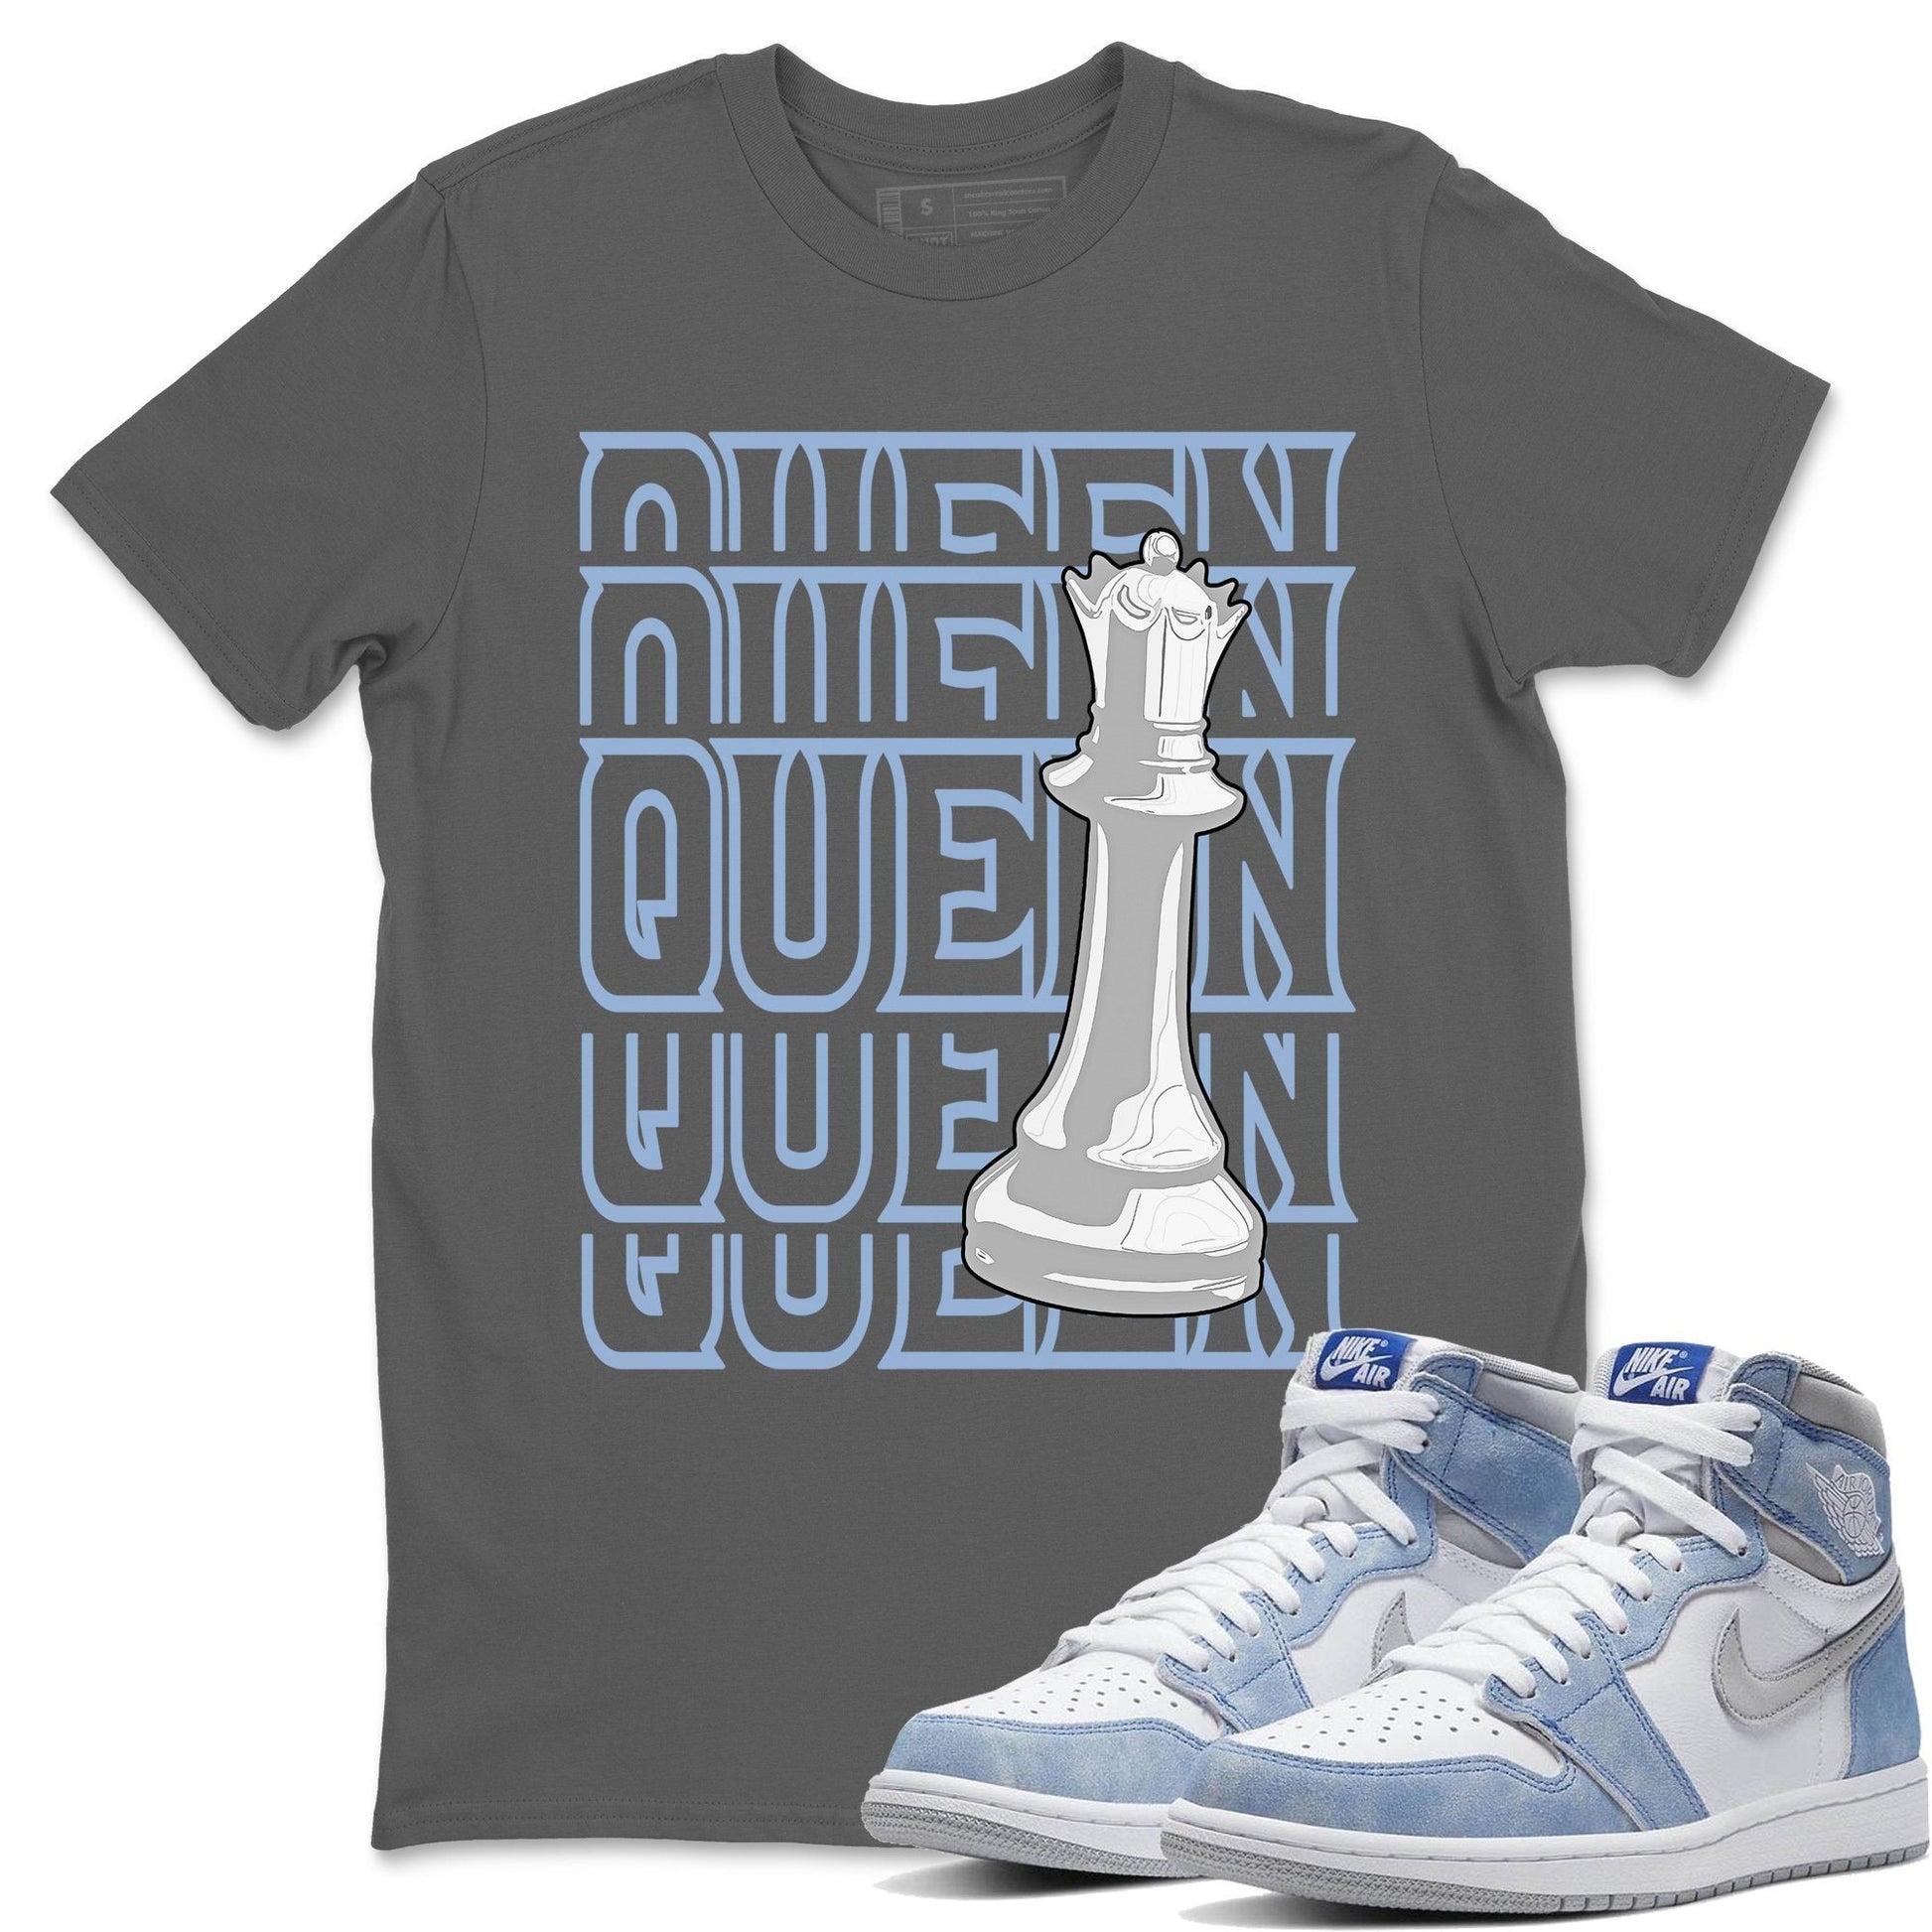 Jordan 1 Hyper Royal Sneaker Match Tees Queen Sneaker Tees Jordan 1 Hyper Royal Sneaker Release Tees Unisex Shirts